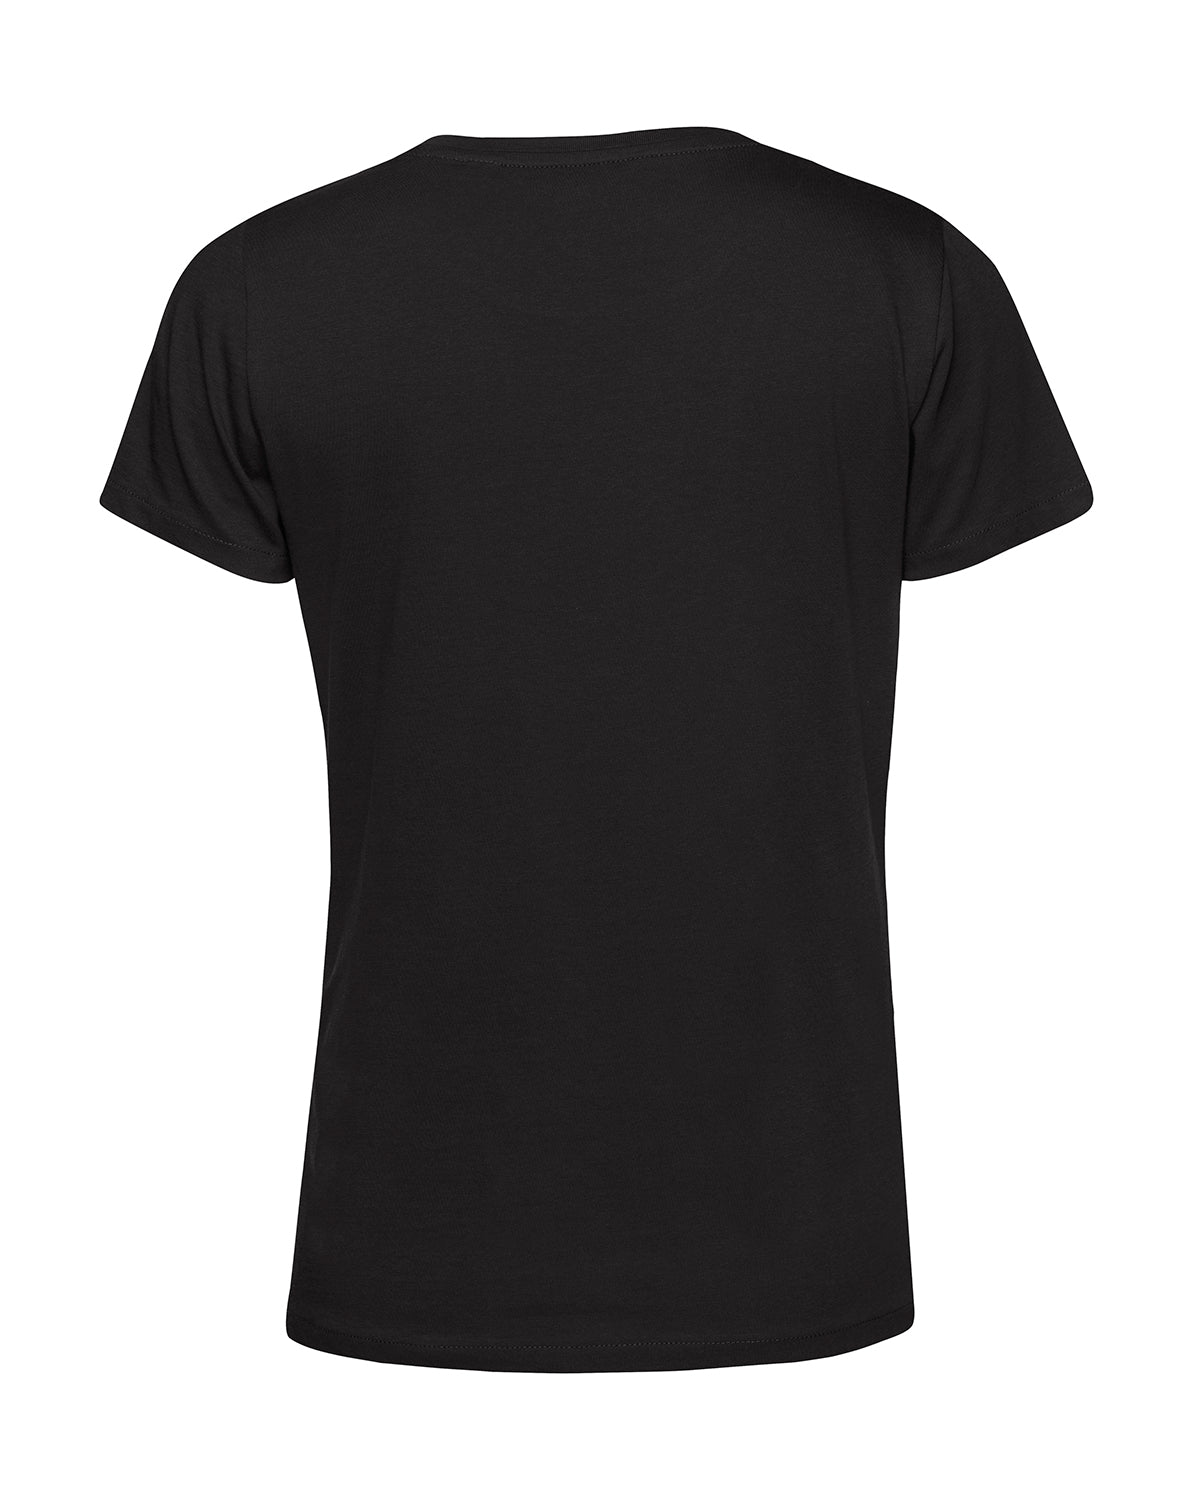 Frauen T-Shirt | WLTR11 | schwarz